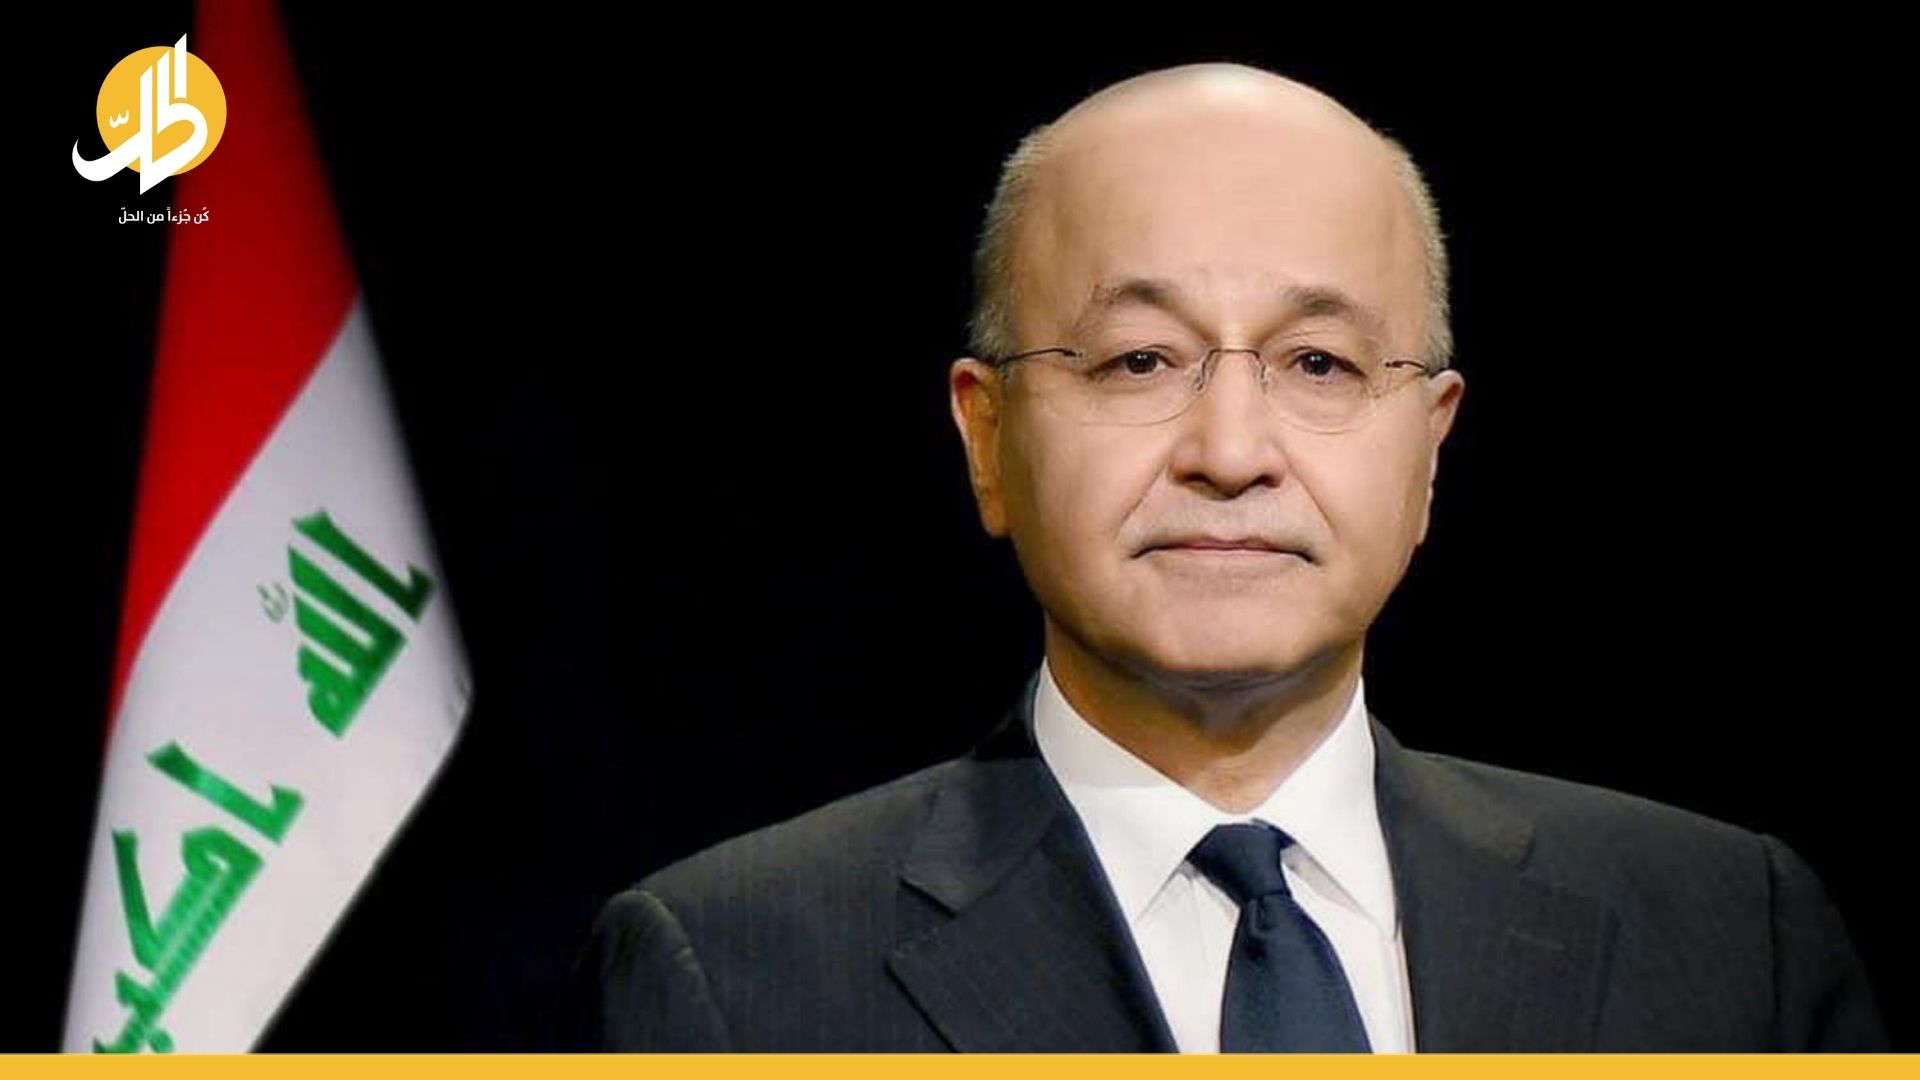 برهم صالح يعول على “المفاجأة” لنيل رئاسة العراق مجددا